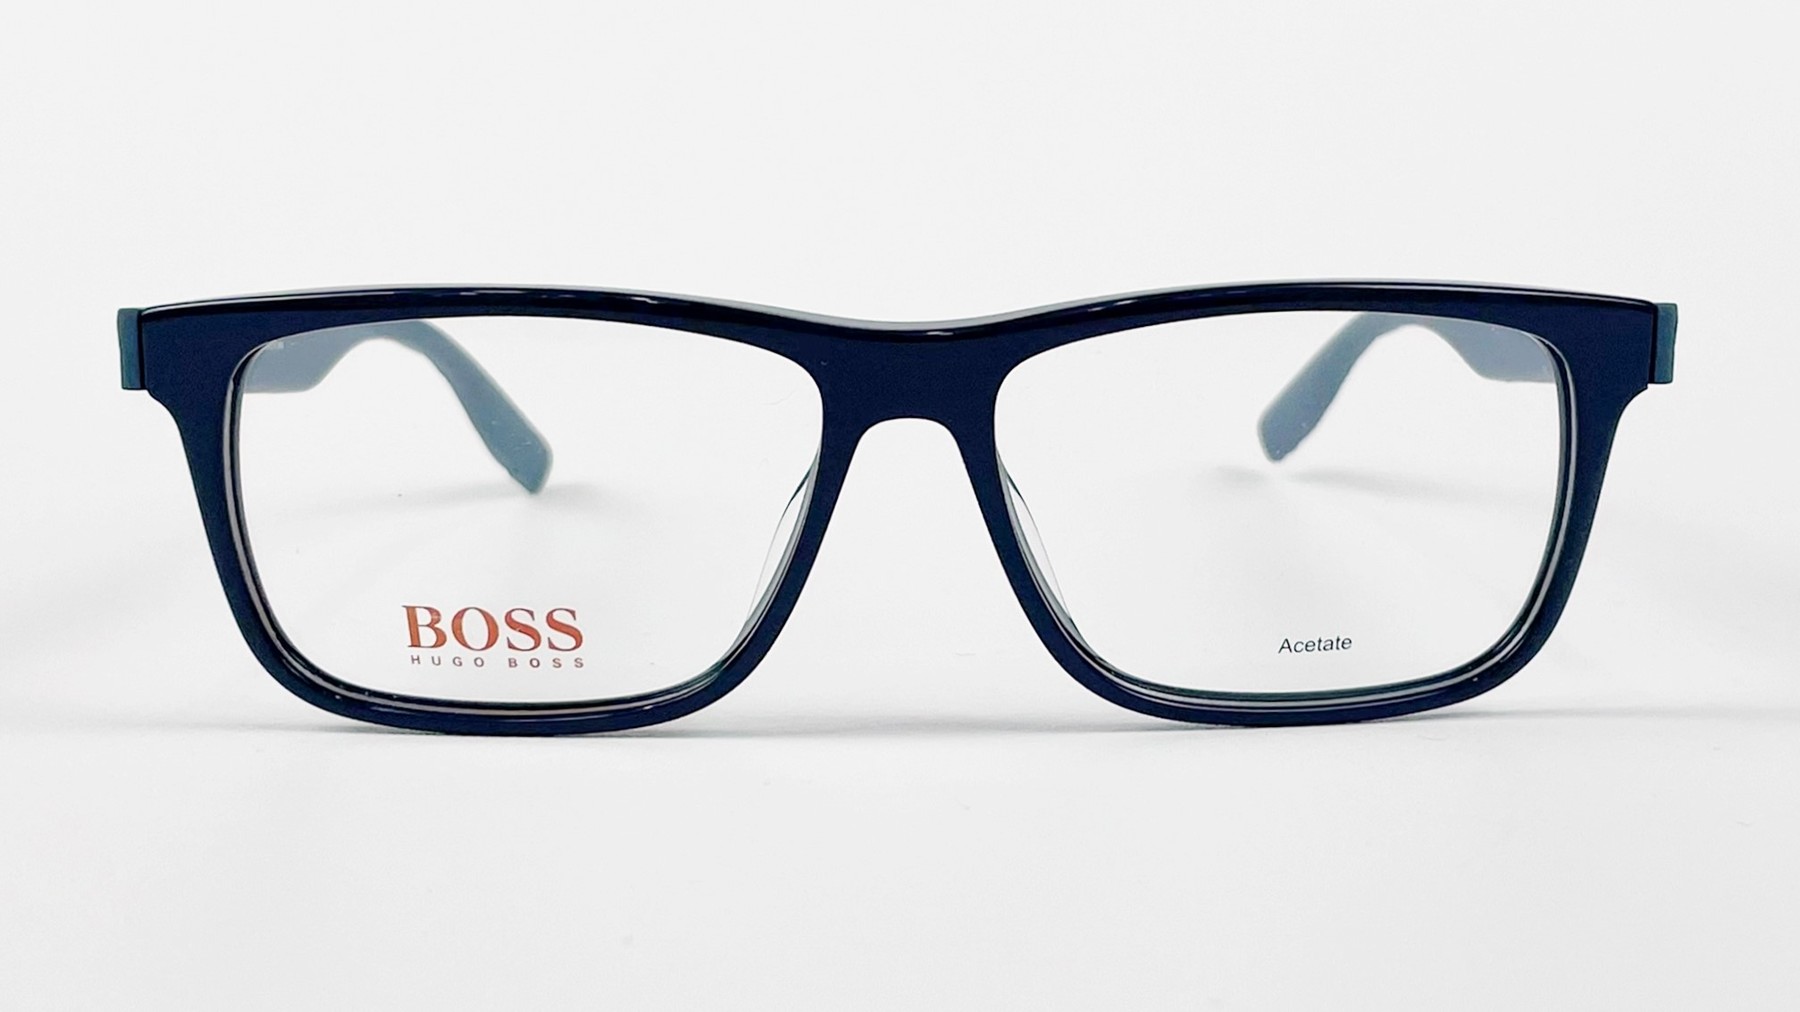 HUGO BOSS BO 0298 ZX9, Korean glasses, sunglasses, eyeglasses, glasses